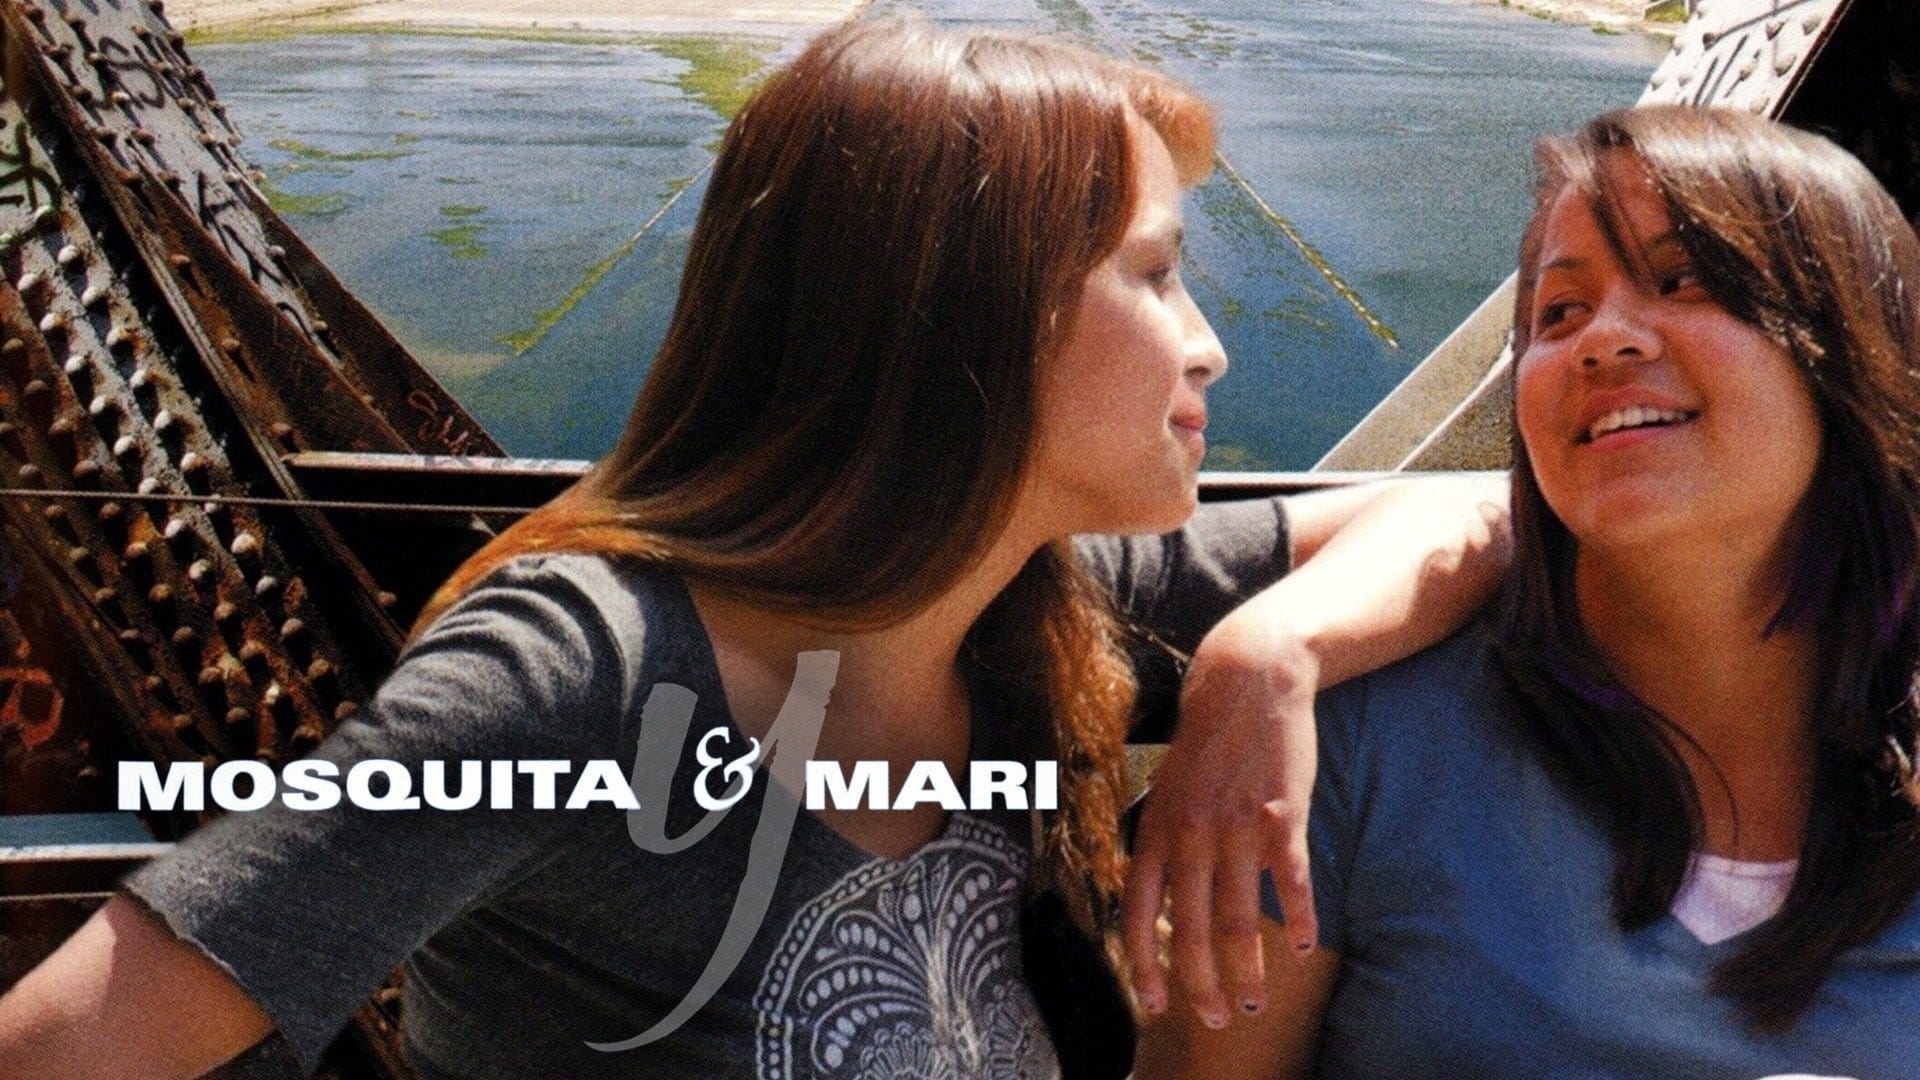 Mosquita y Mari (2012)